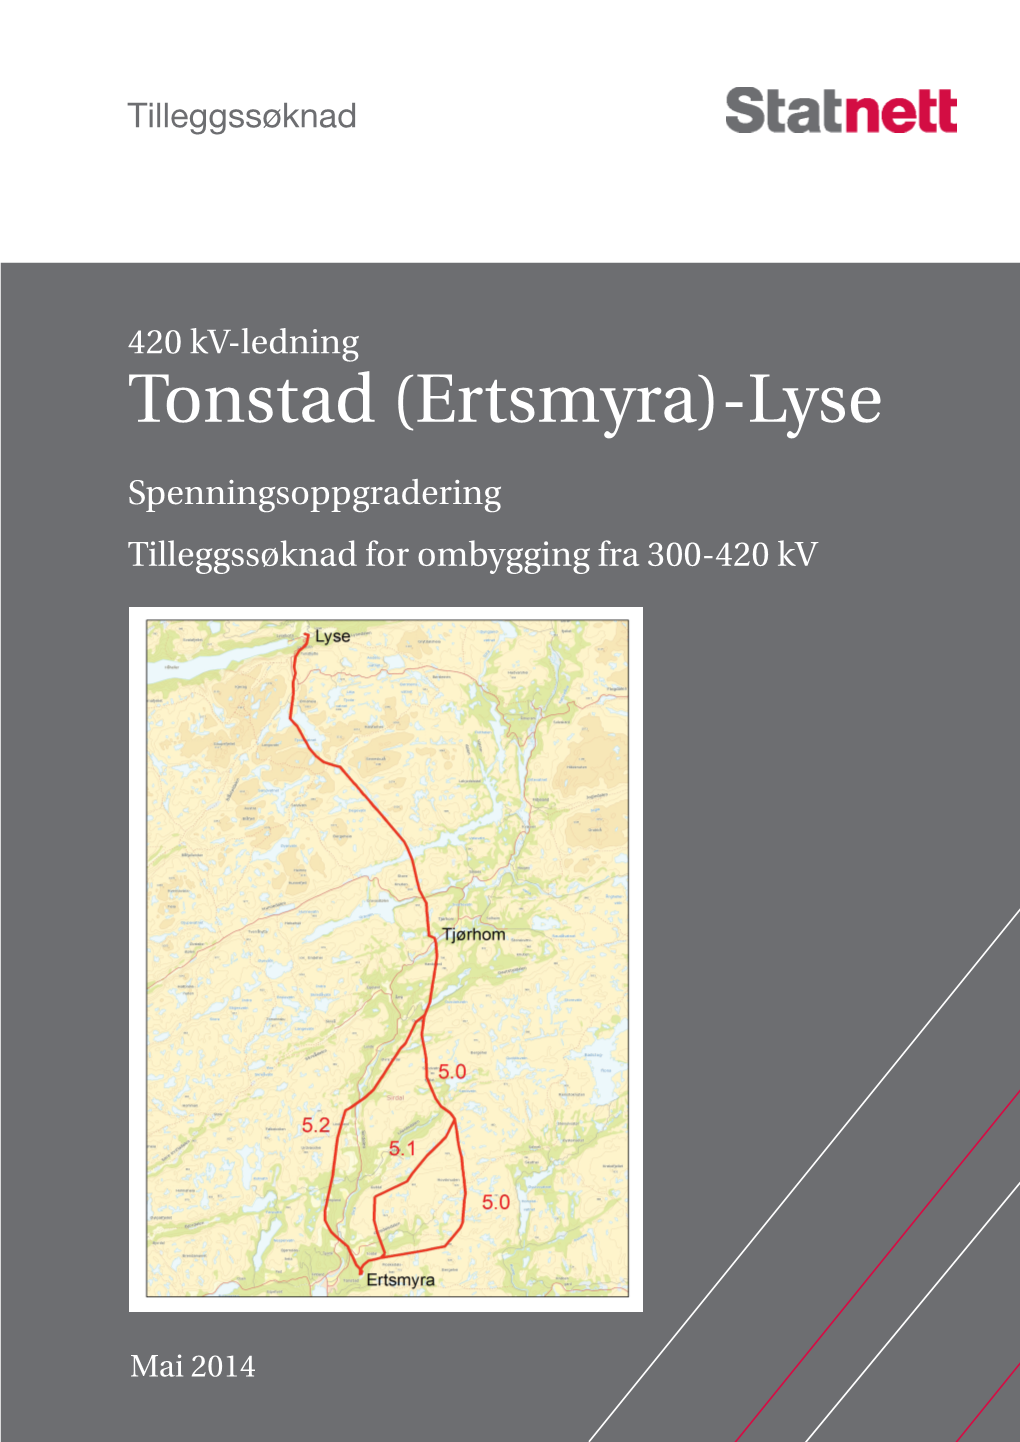 Tonstad (Ertsmyra)-Lyse